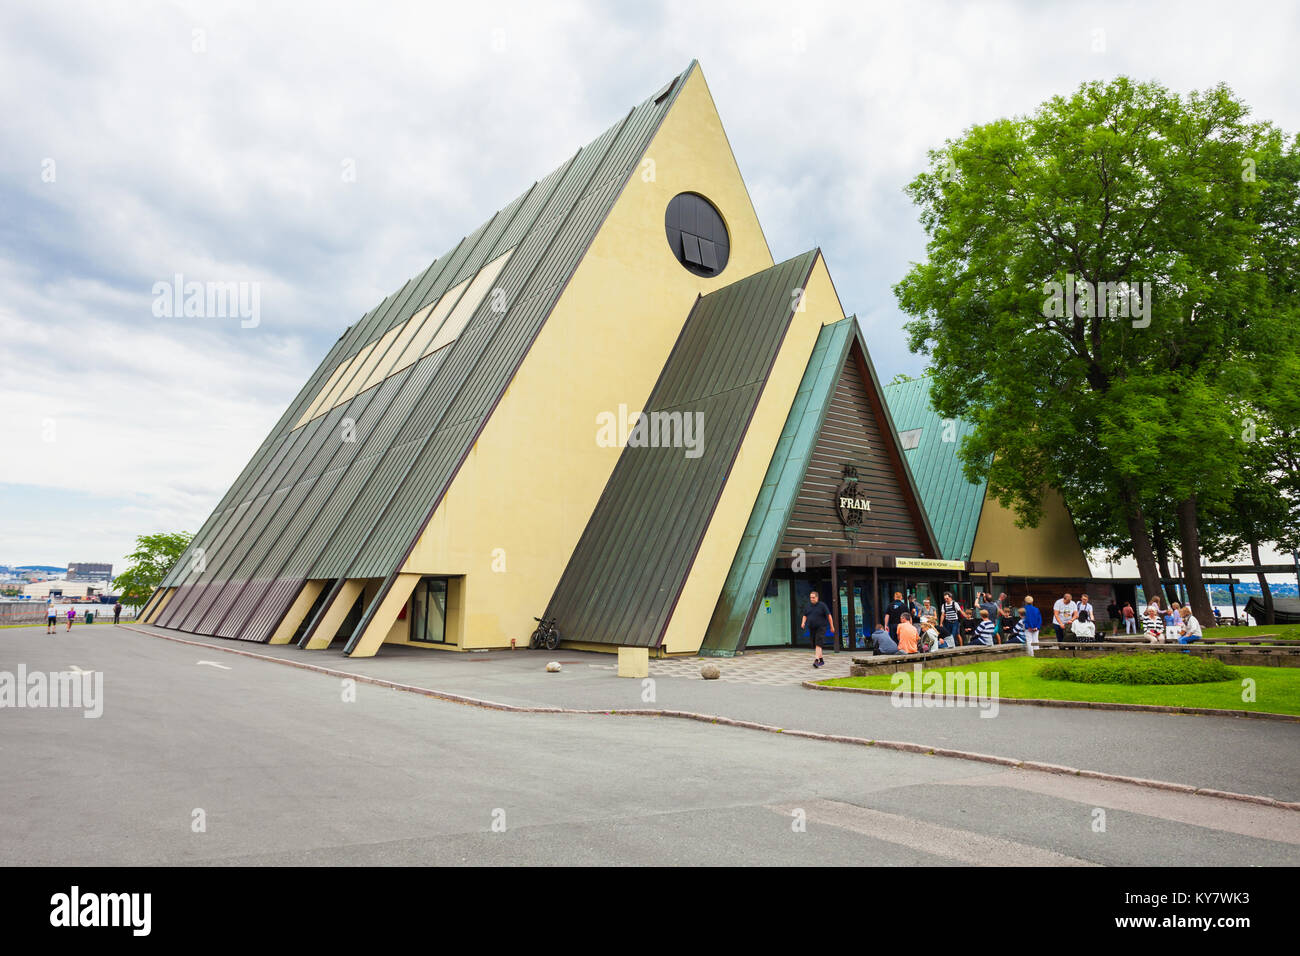 OSLO, Norvège - 21 juillet 2017 : le Musée Fram ou Frammuseet est un musée de l'exploration polaire norvégien. Fram Musée situé sur l'île de Bigdoy à Osl Banque D'Images